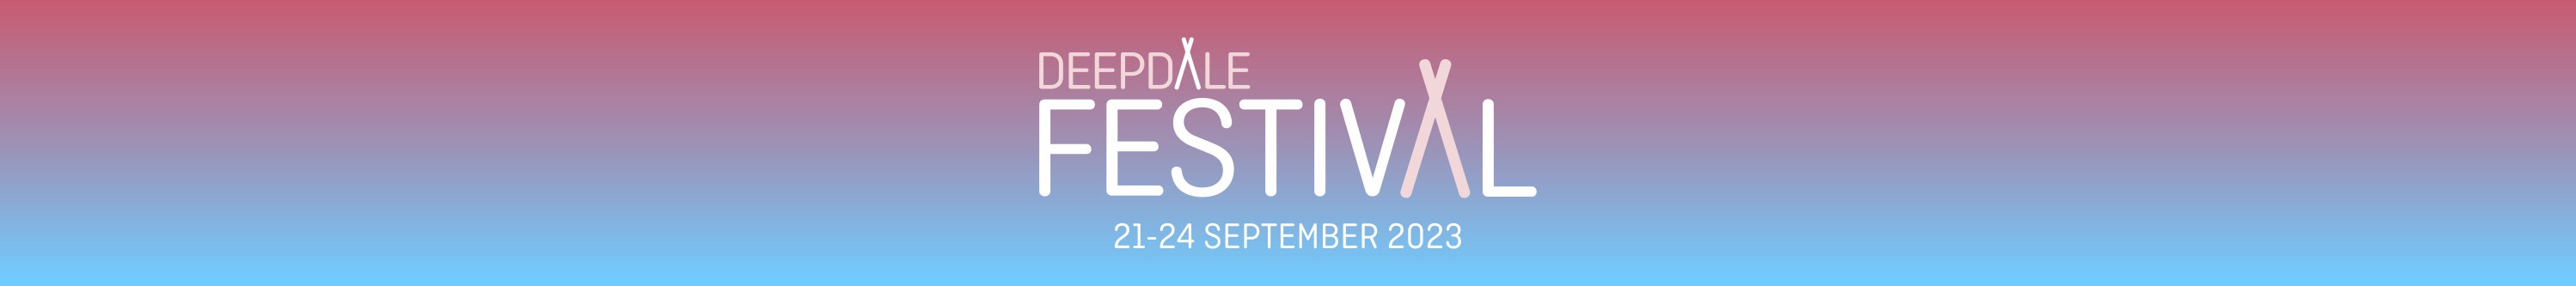 Deepdale Festival | 21st to 24th September 2023